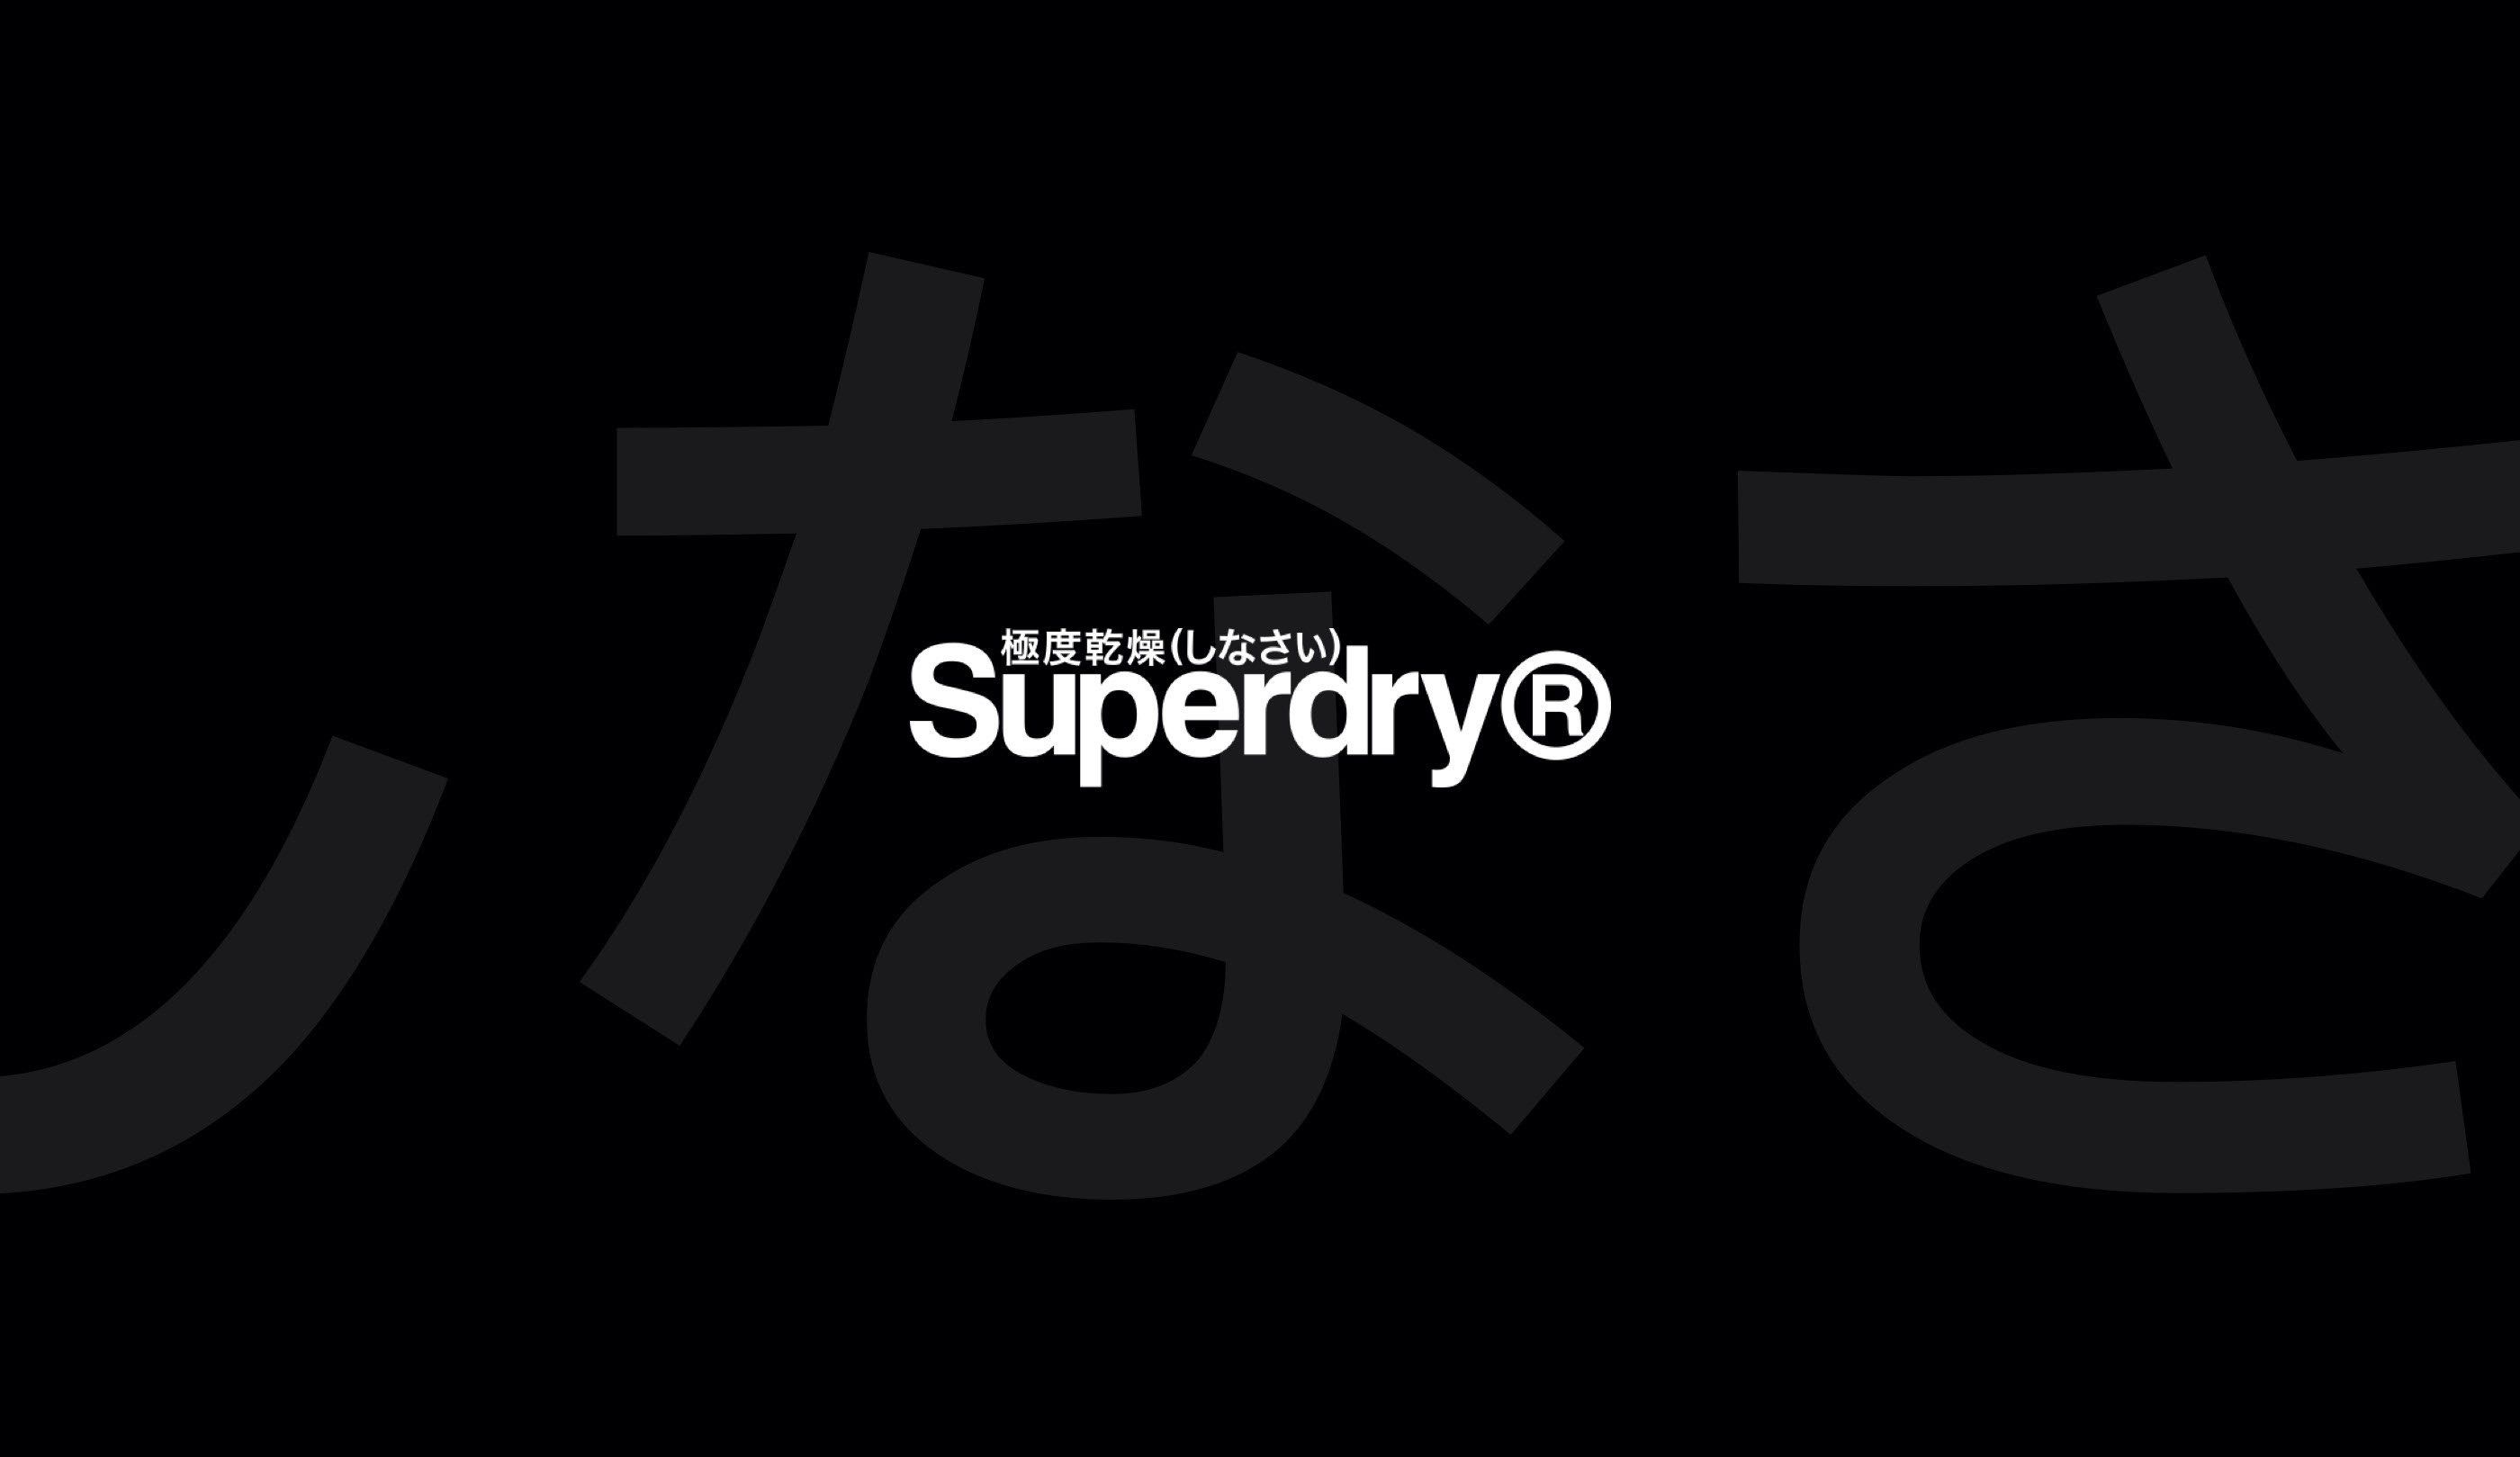 SUPERDRY® — Изображение №32 — Интерфейсы на Dprofile